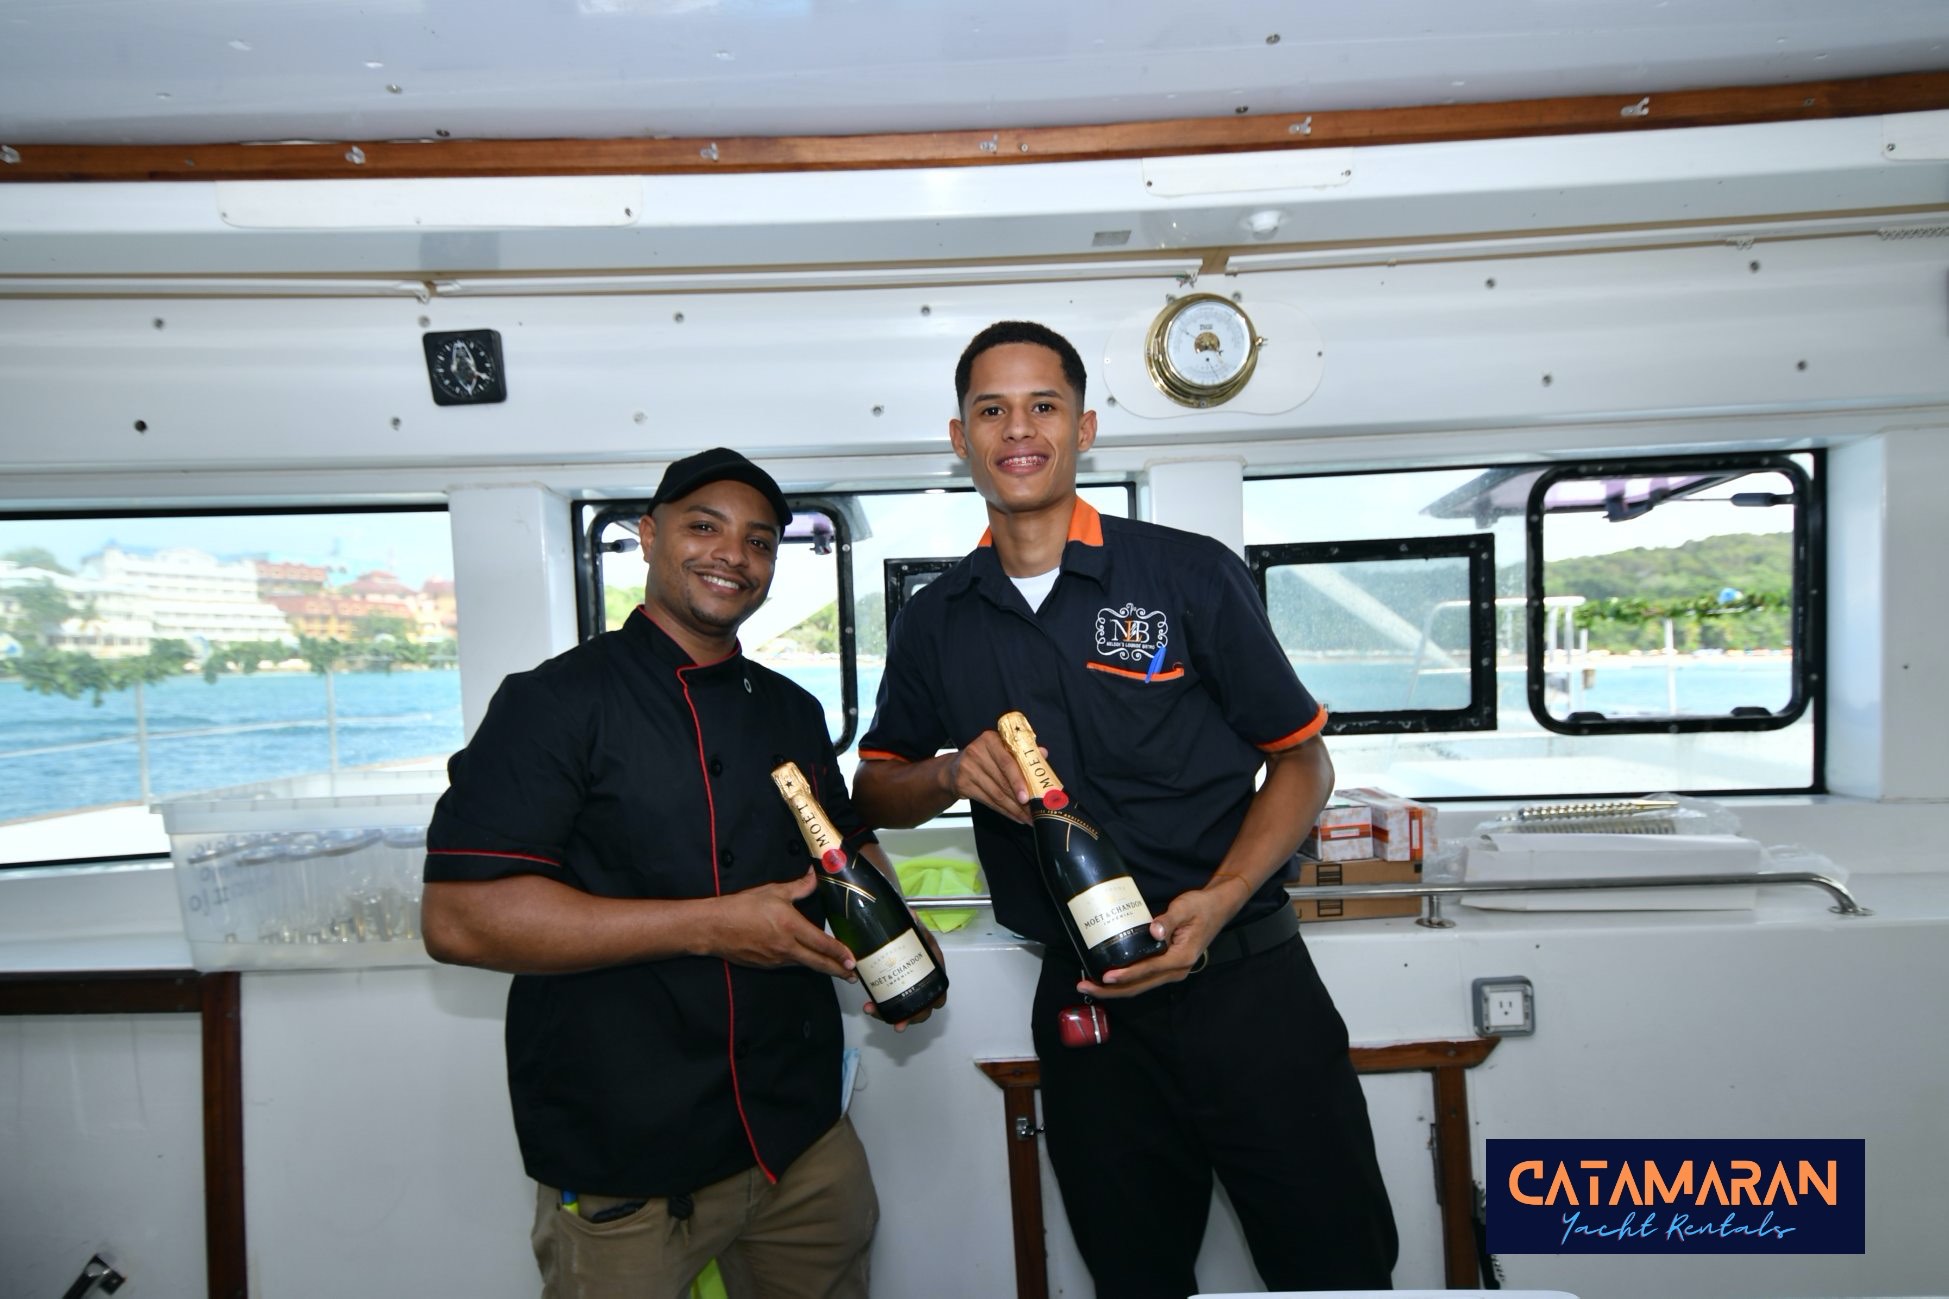 crew members of the catamaran